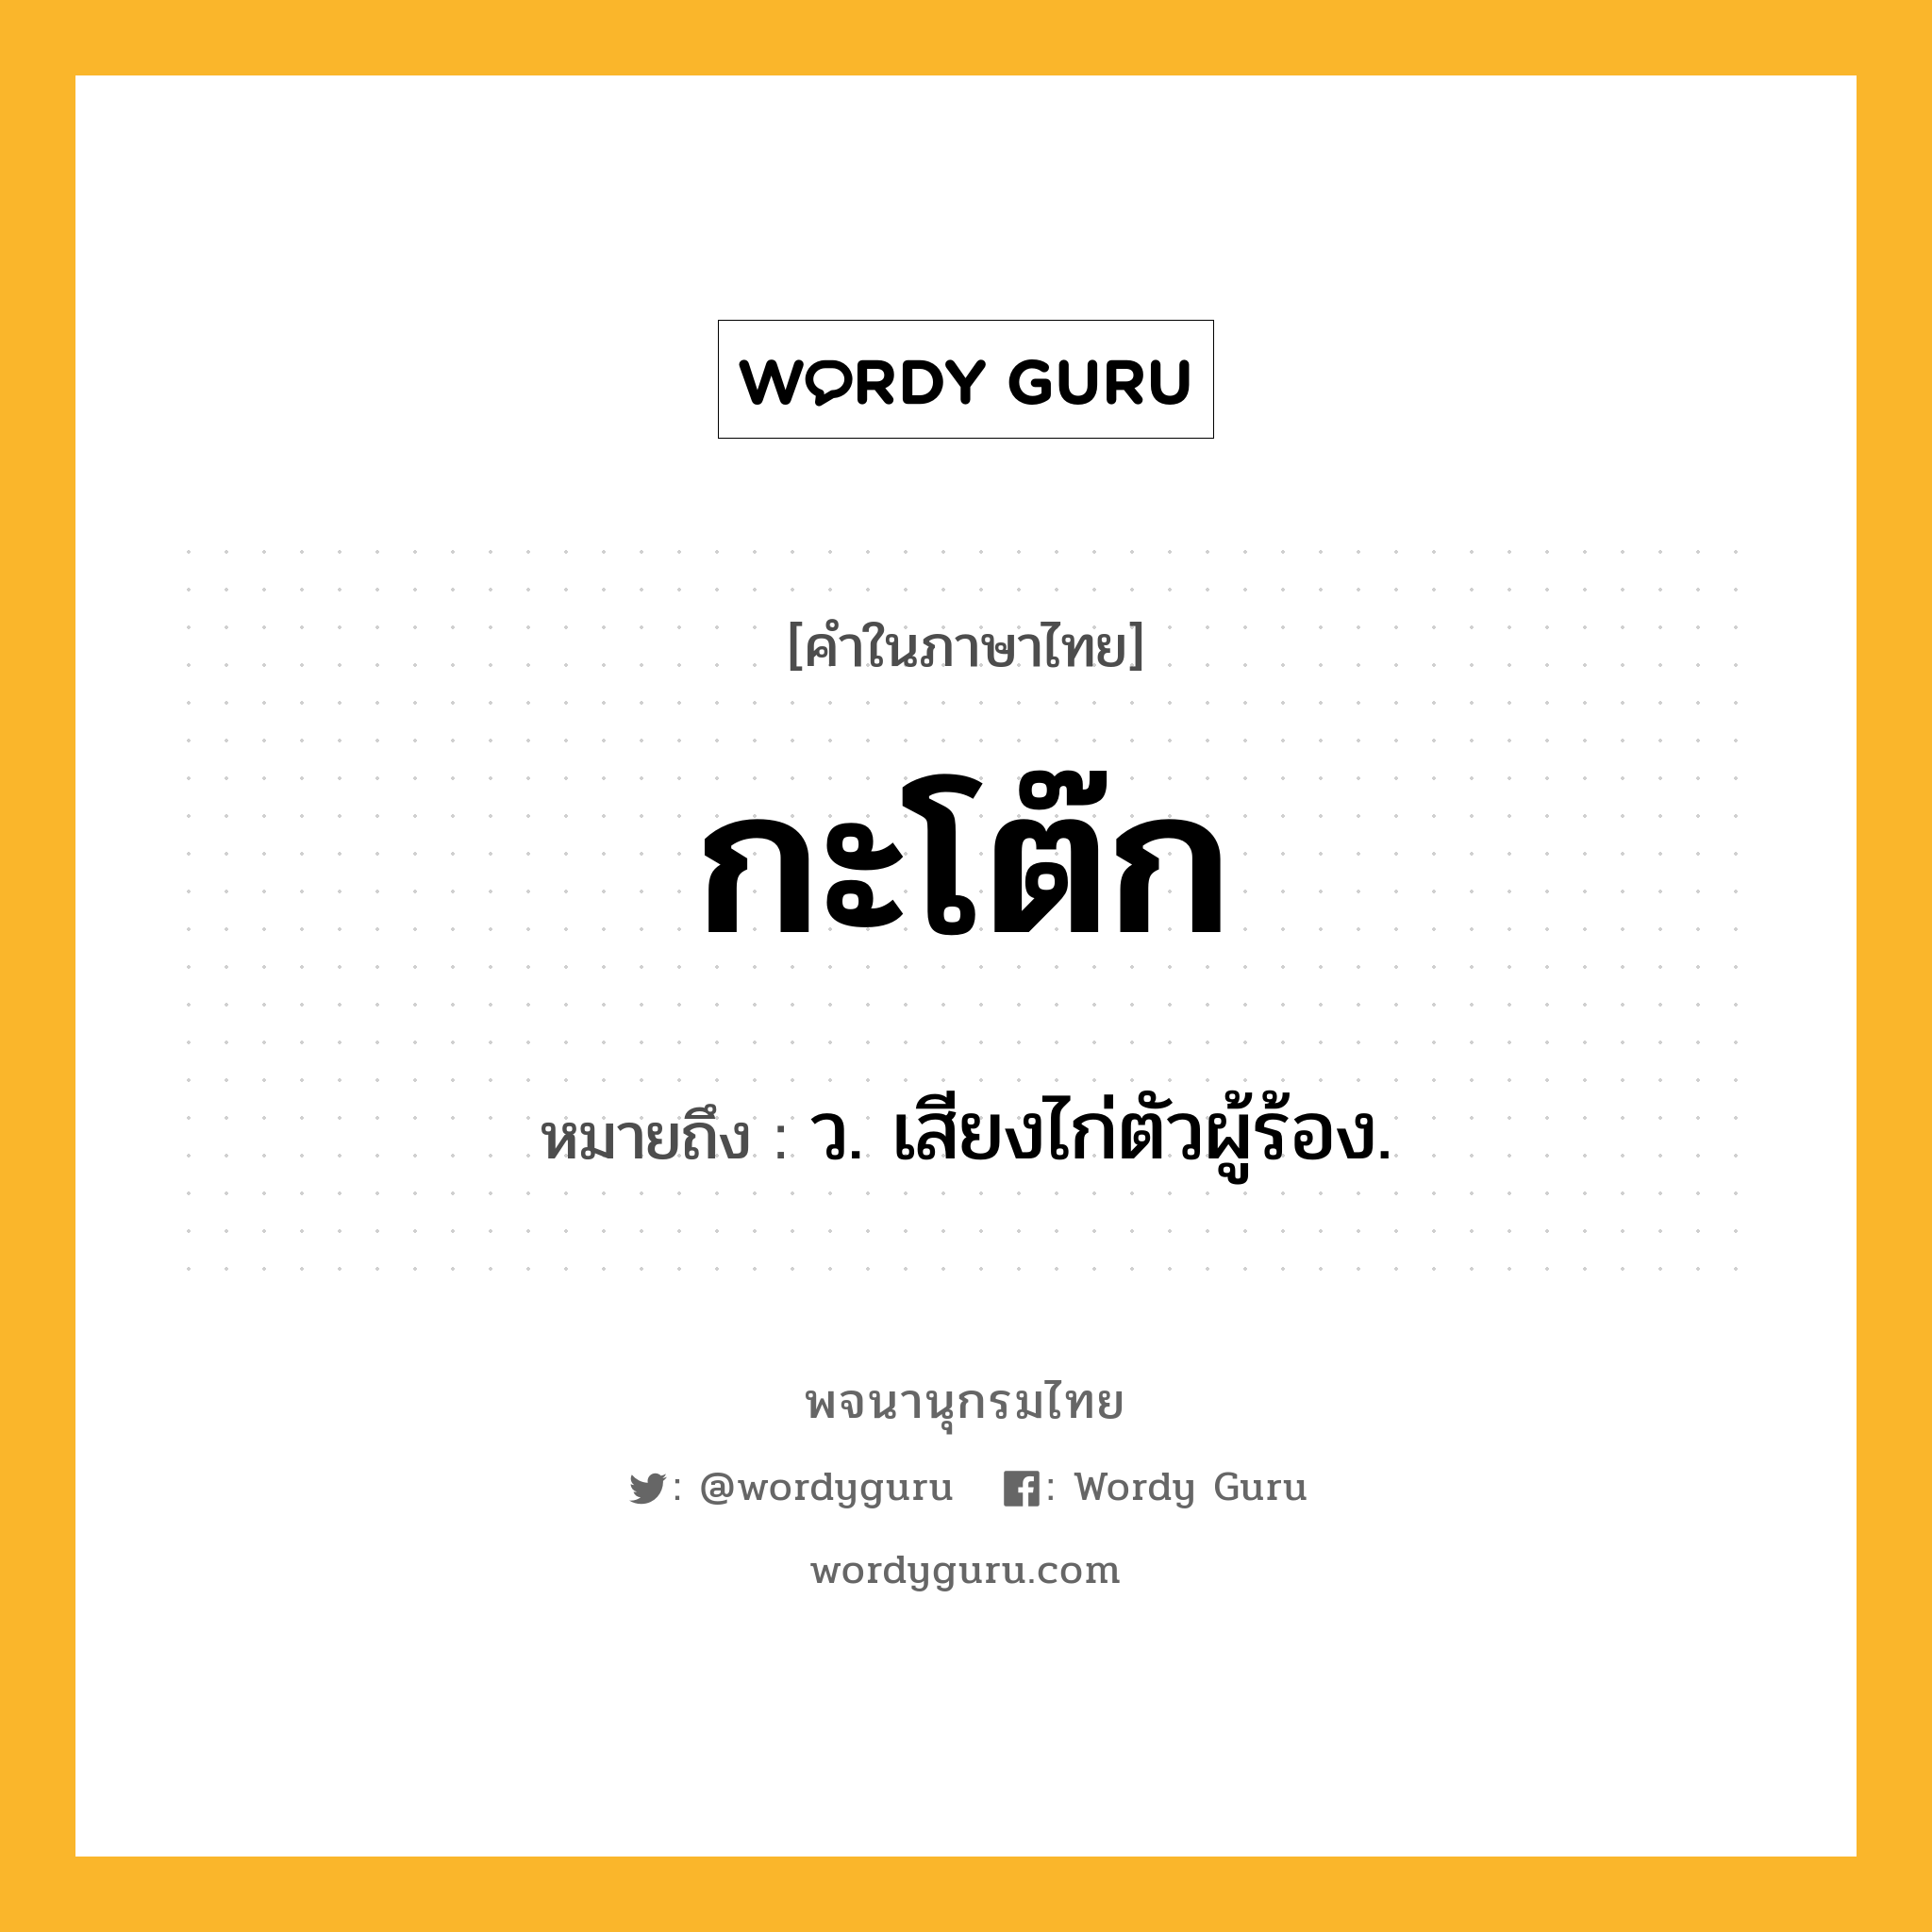 กะโต๊ก ความหมาย หมายถึงอะไร?, คำในภาษาไทย กะโต๊ก หมายถึง ว. เสียงไก่ตัวผู้ร้อง.